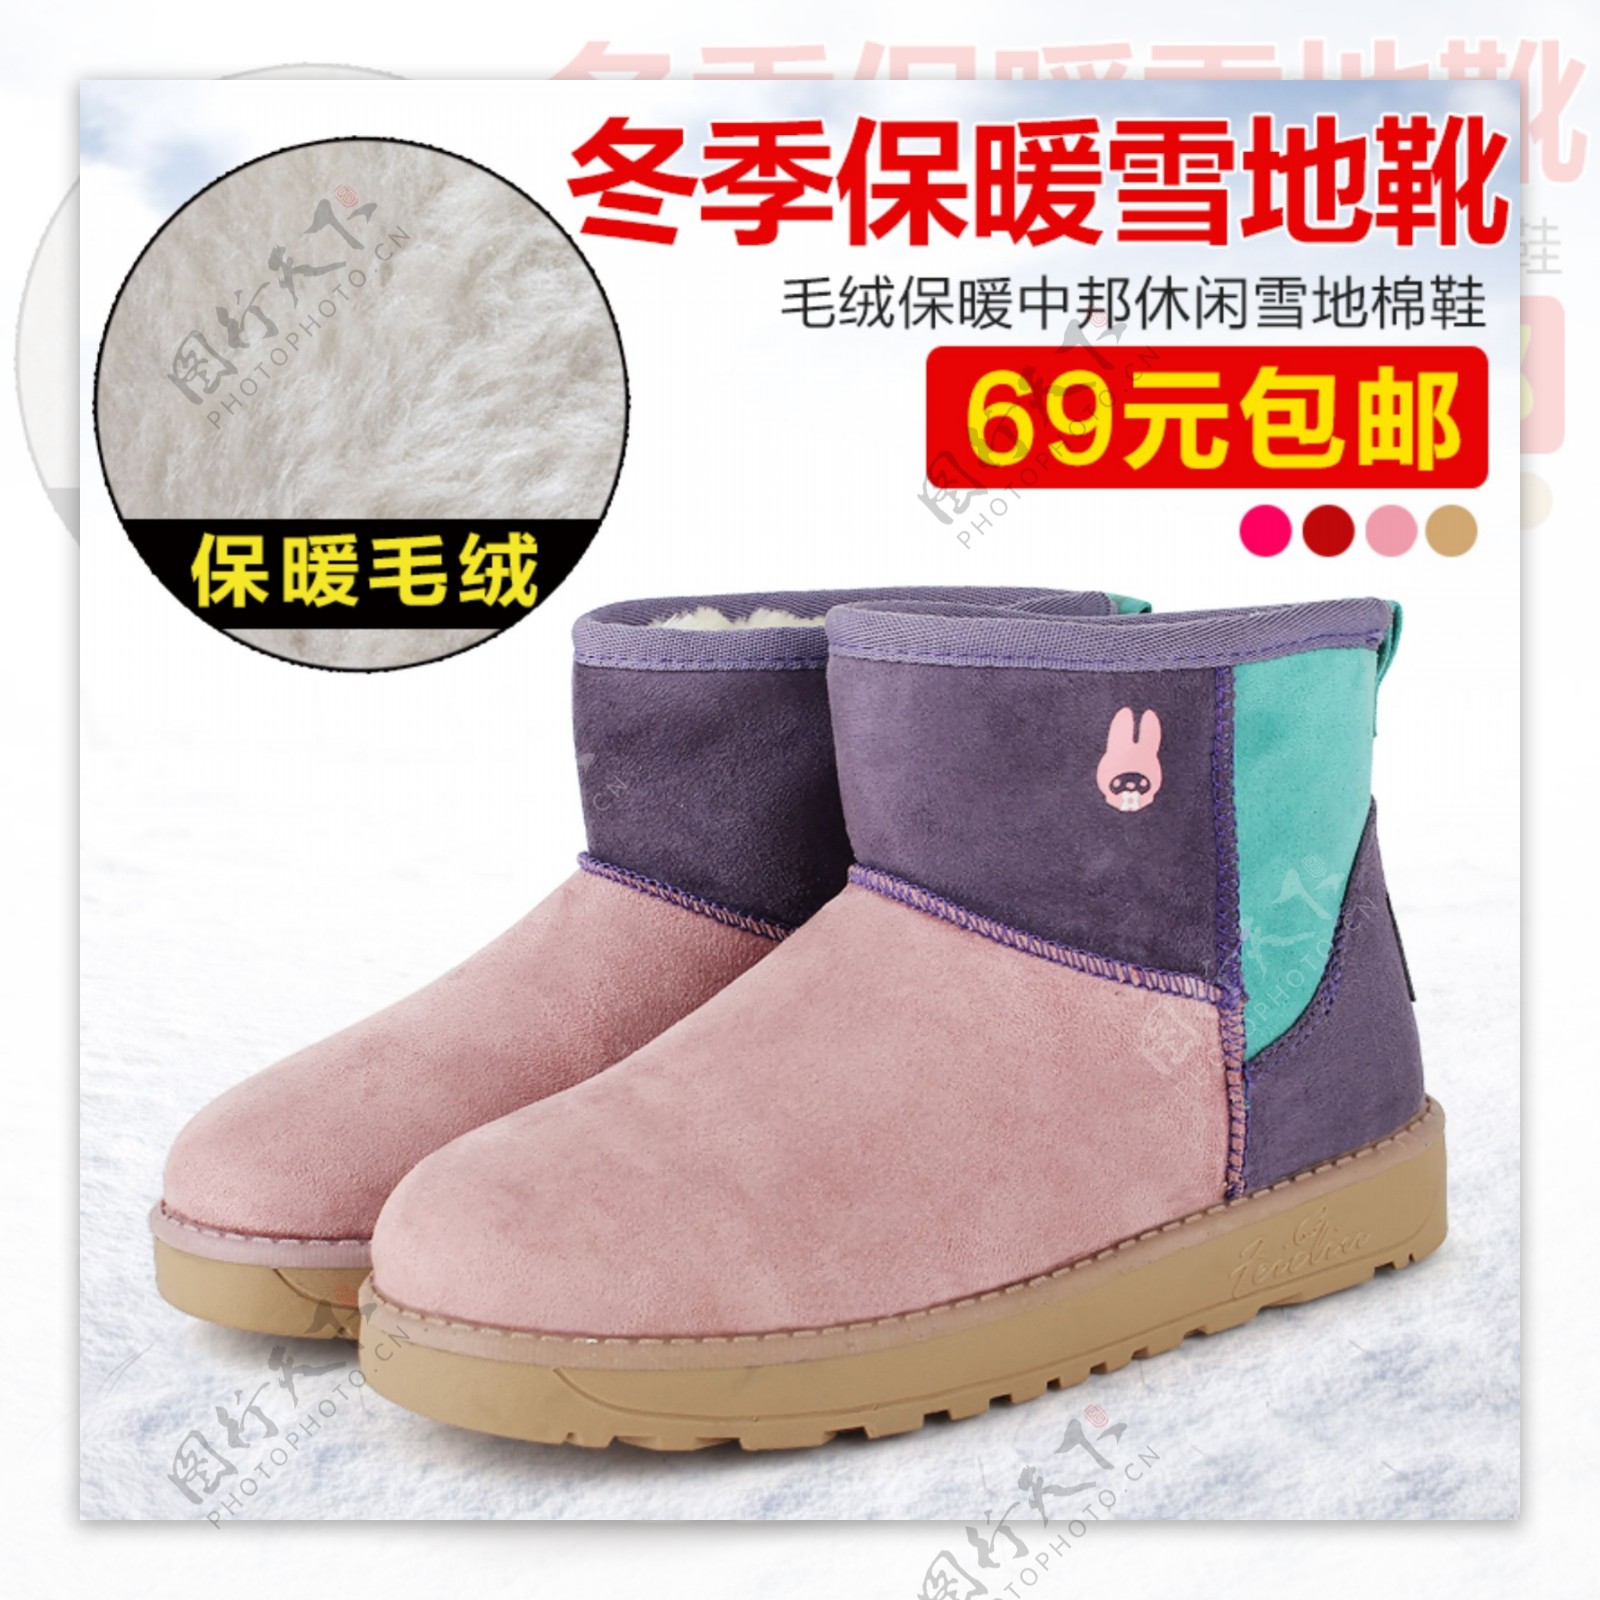 冬季保暖雪地靴